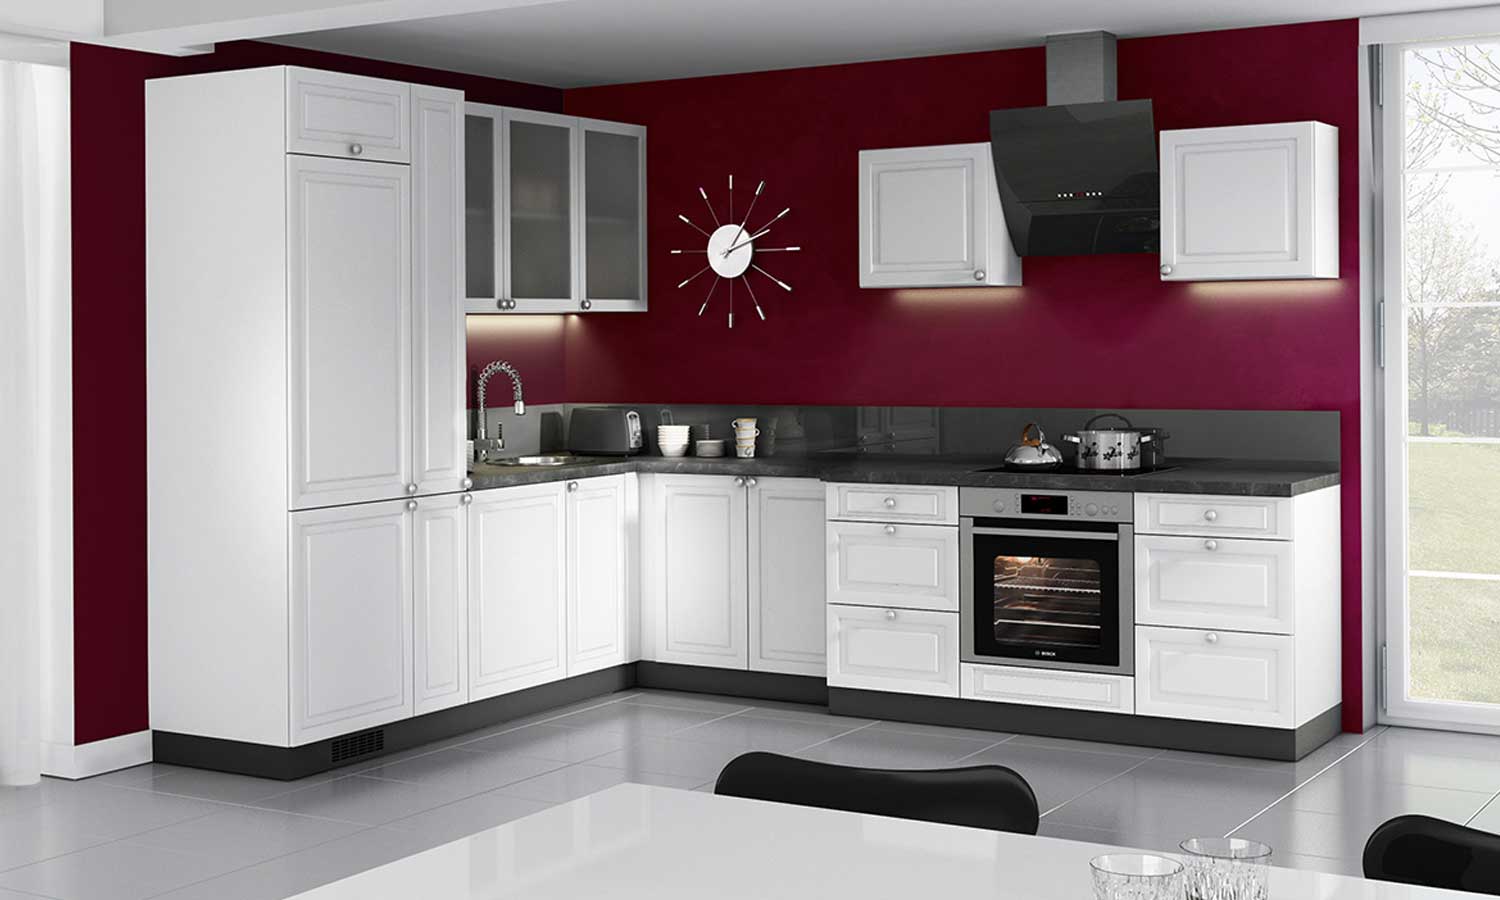 bordowy kolor ścian w kuchni do białych mebli - meble Madryt